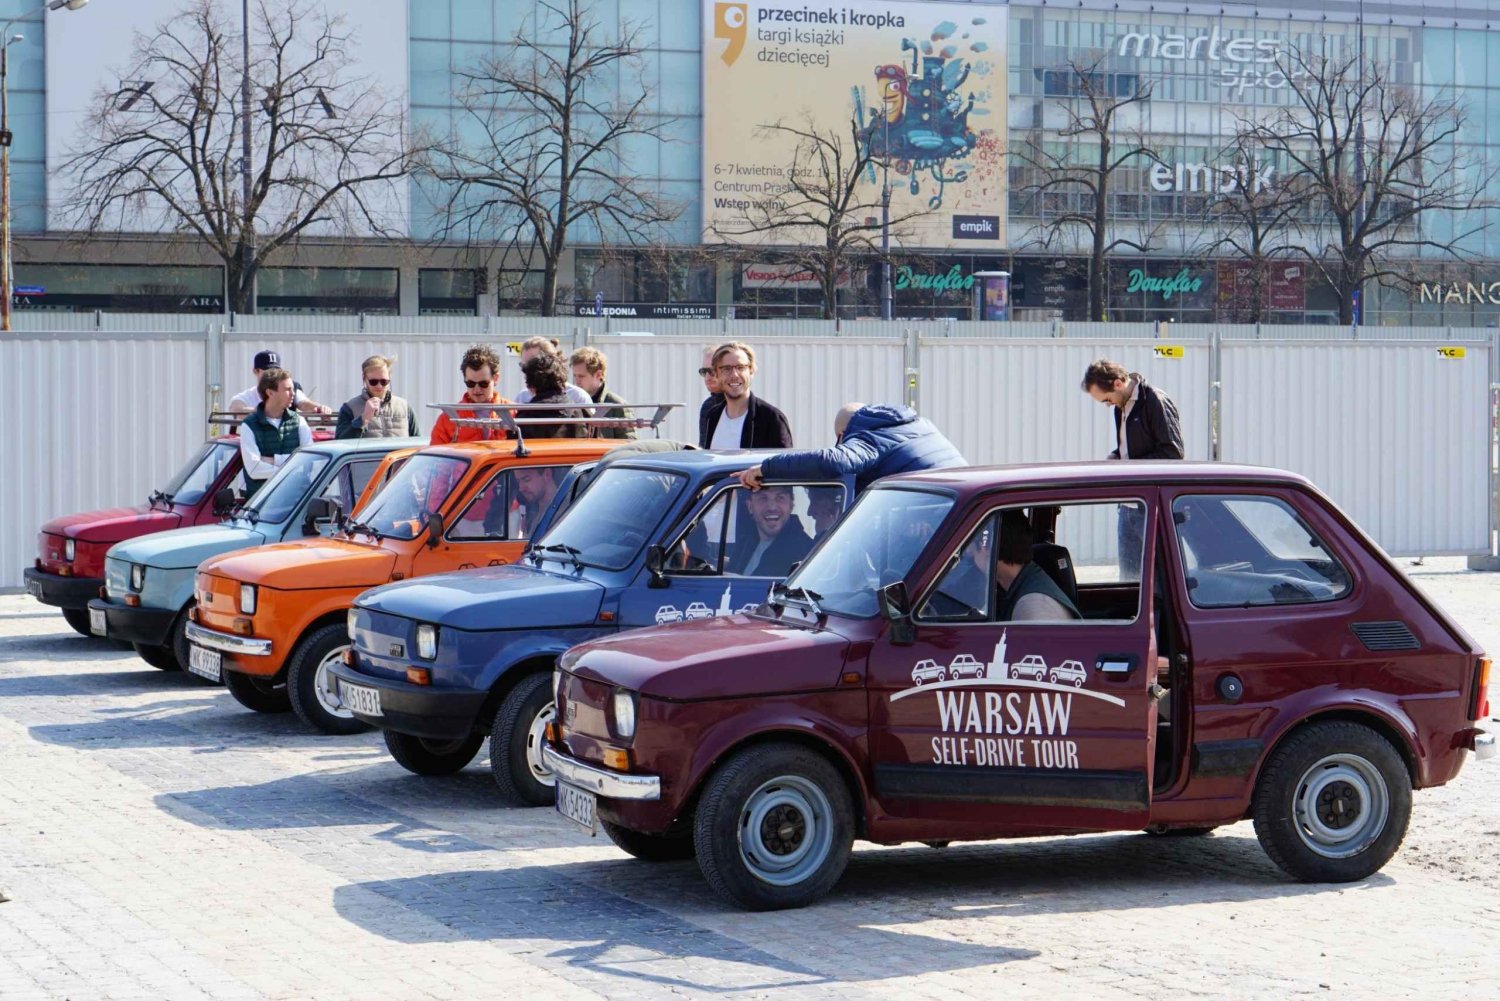 Varsova: Kommunistinen historia Self-Driving Tour